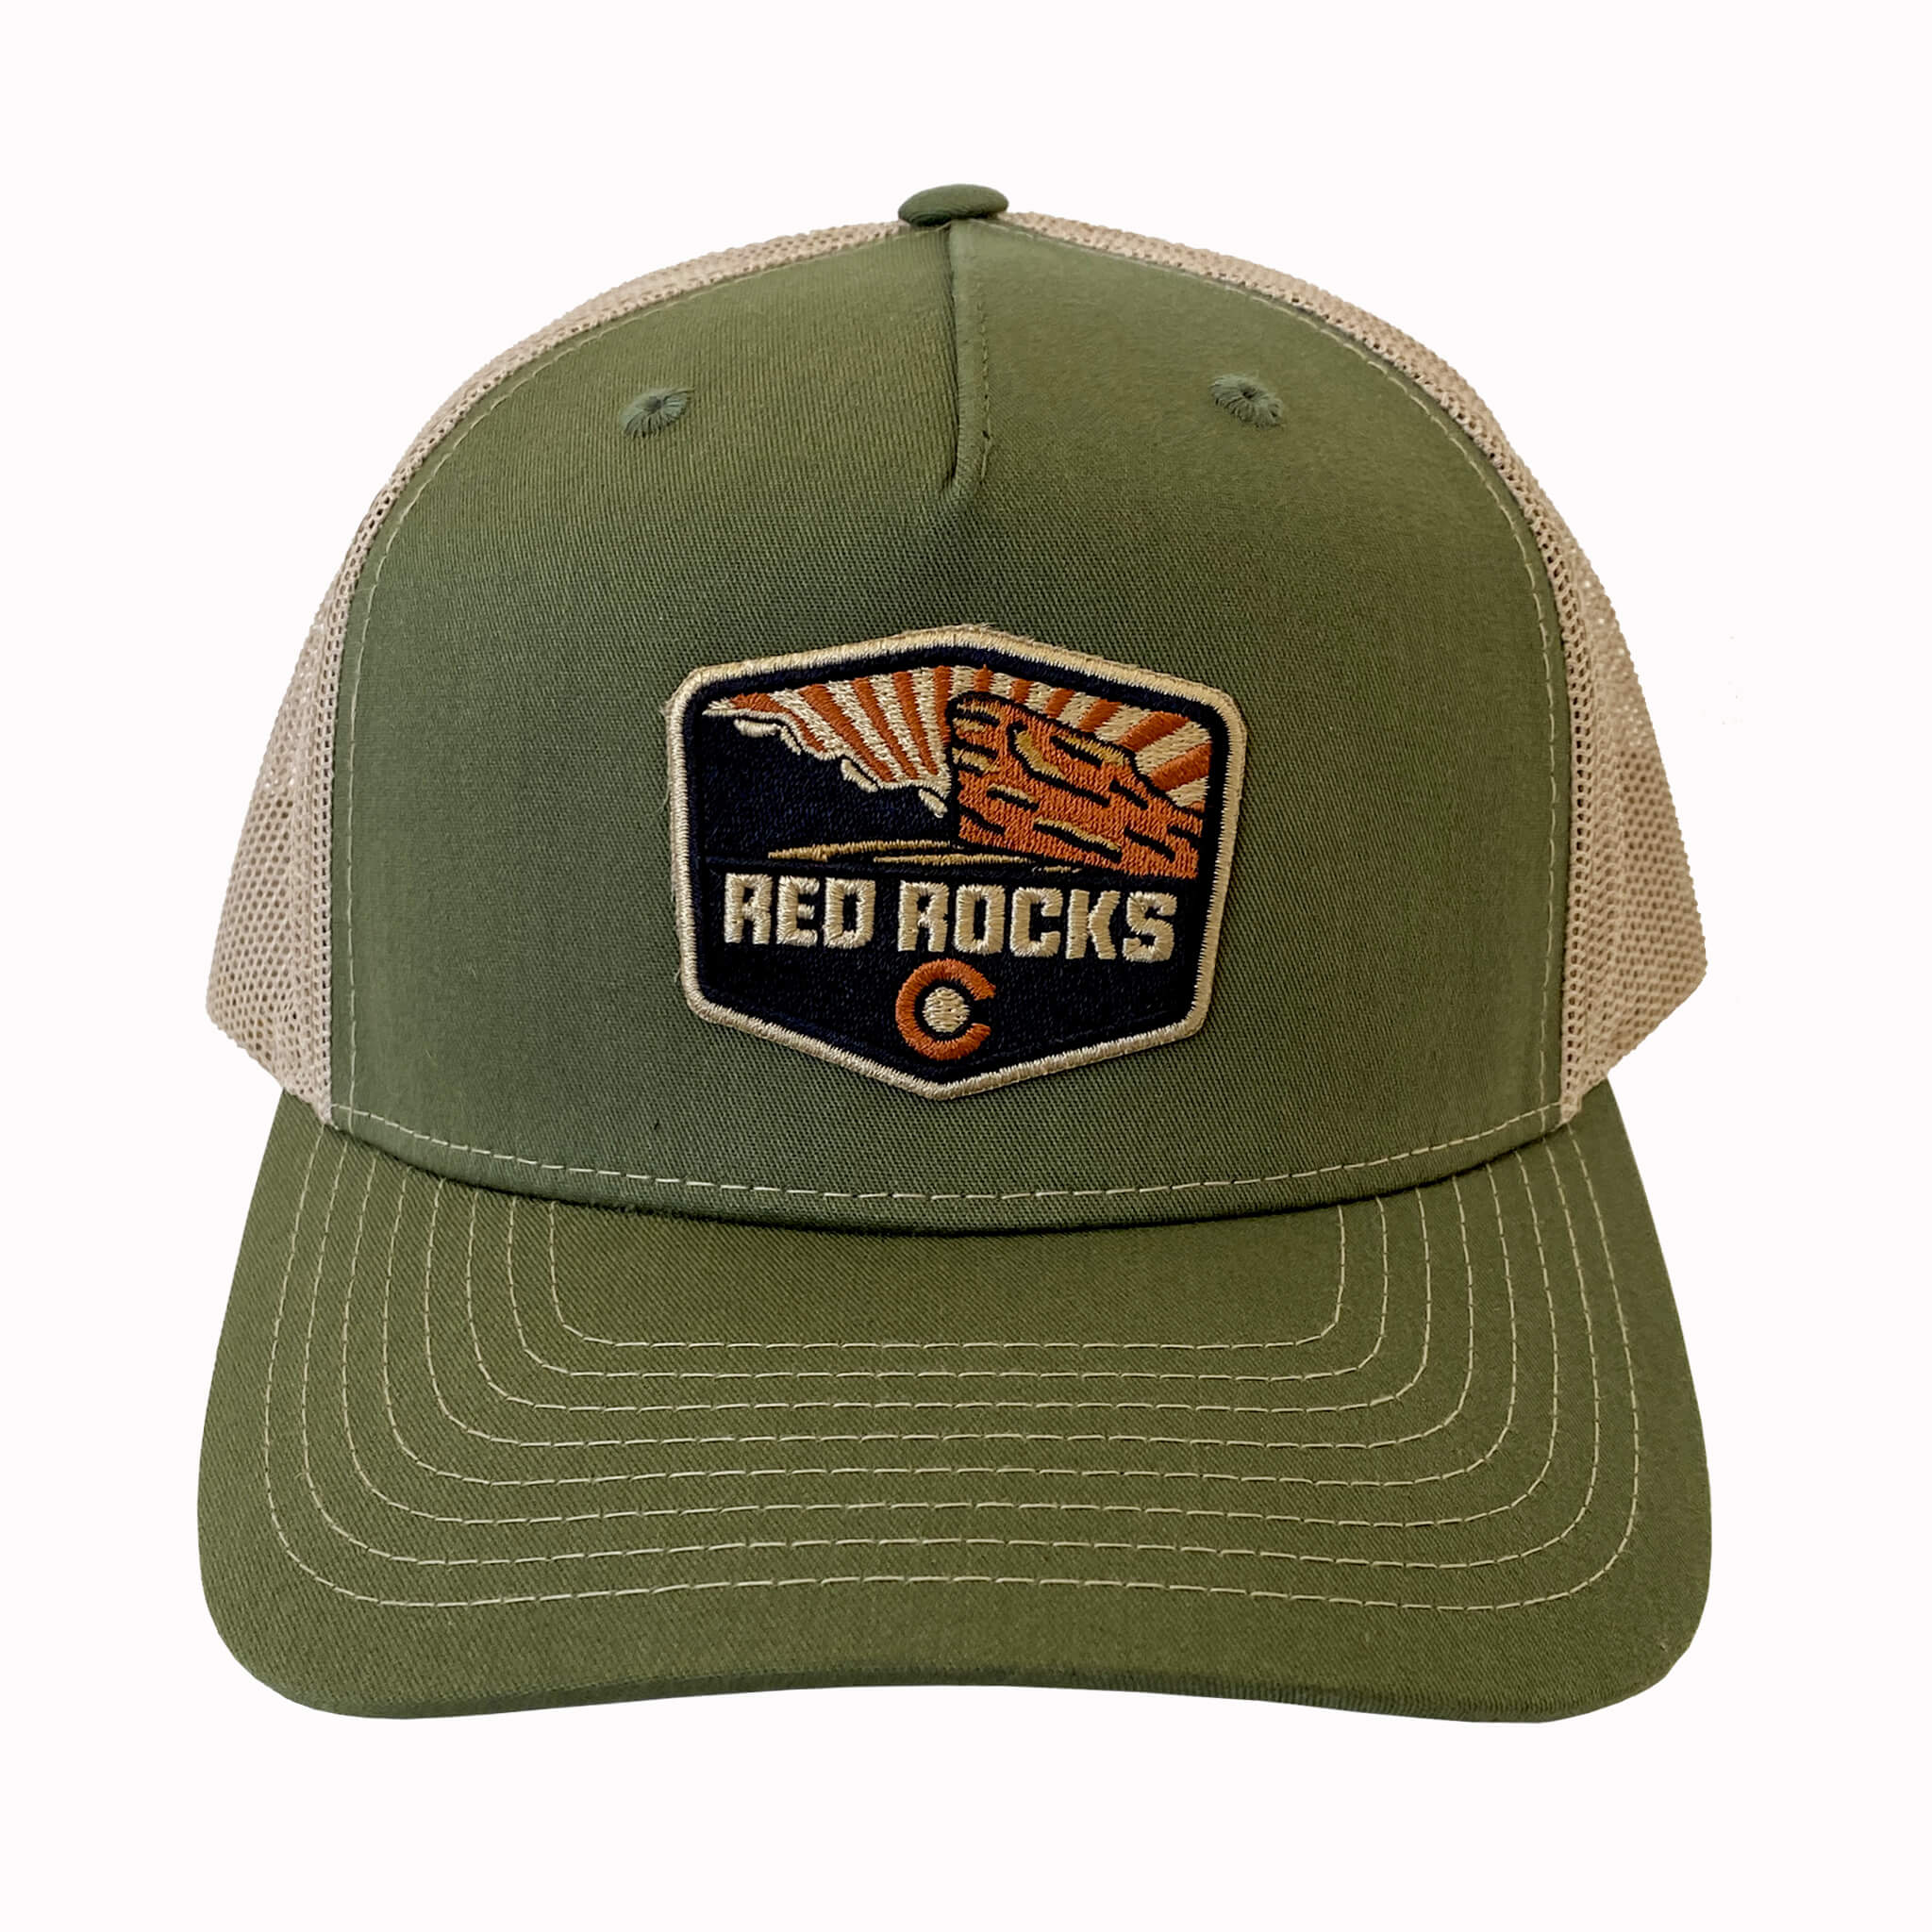 Red Rocks Trucker Hat, Colorado Hat